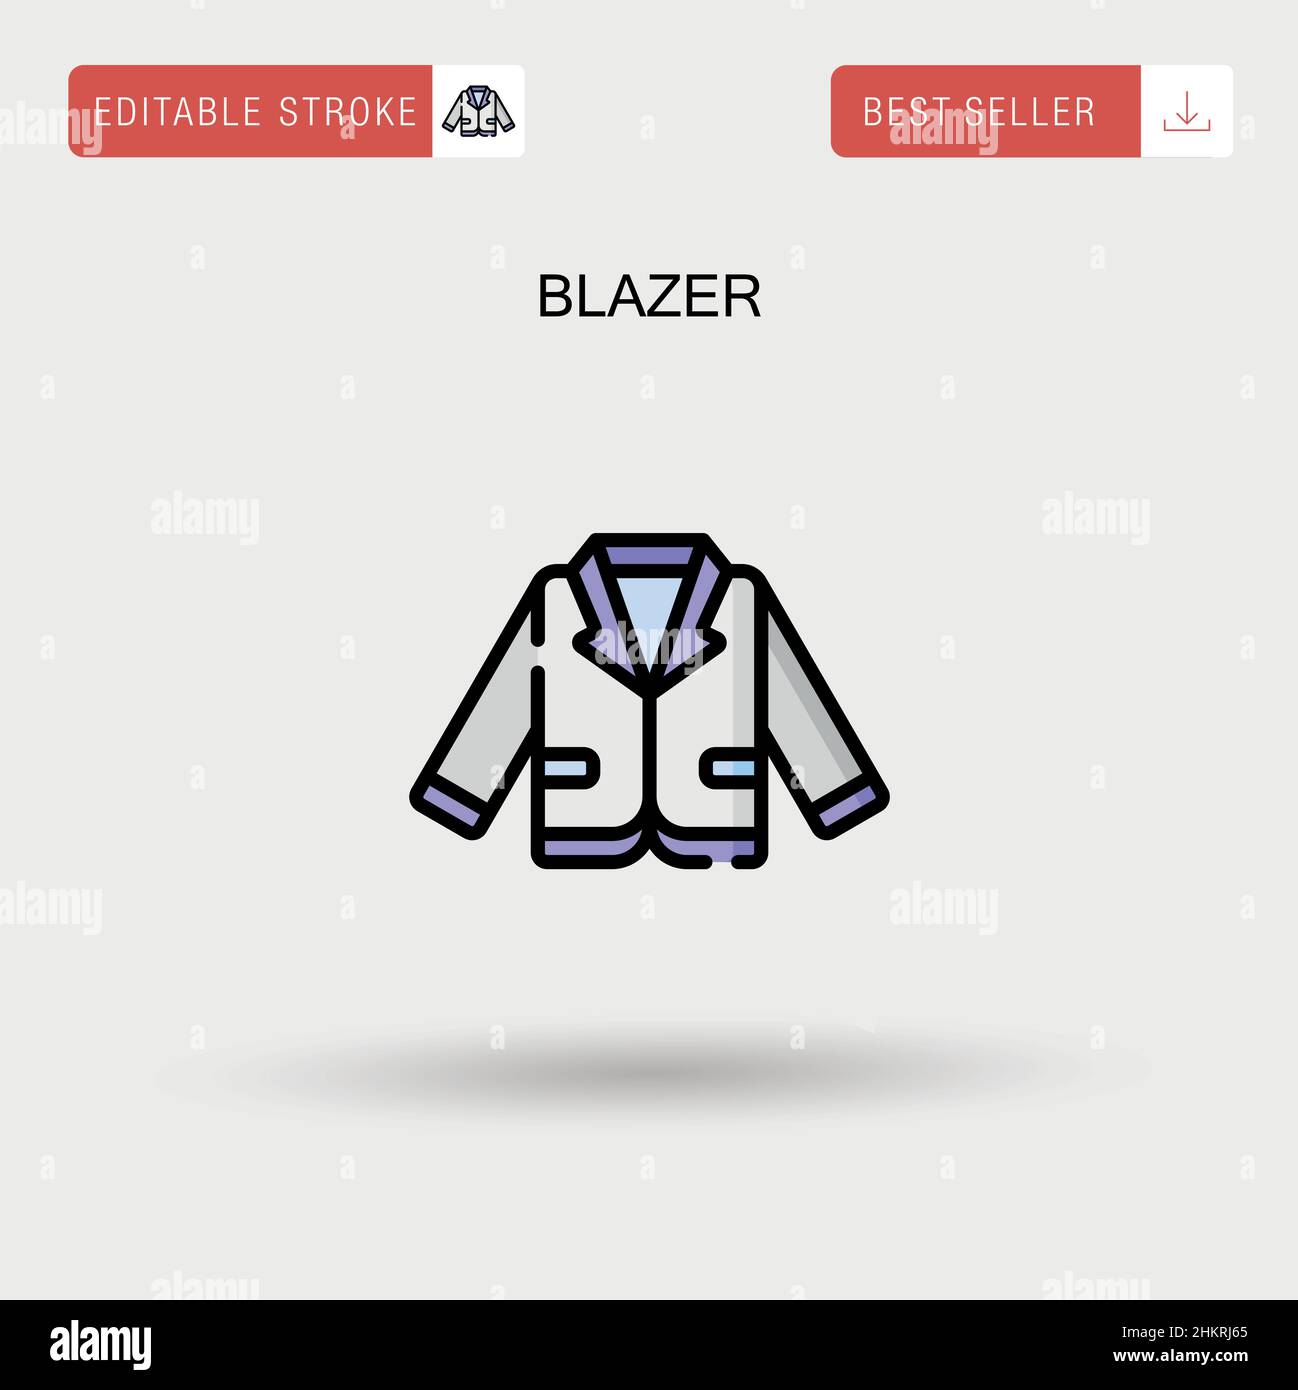 Blazer Simple vector icon. Stock Vector